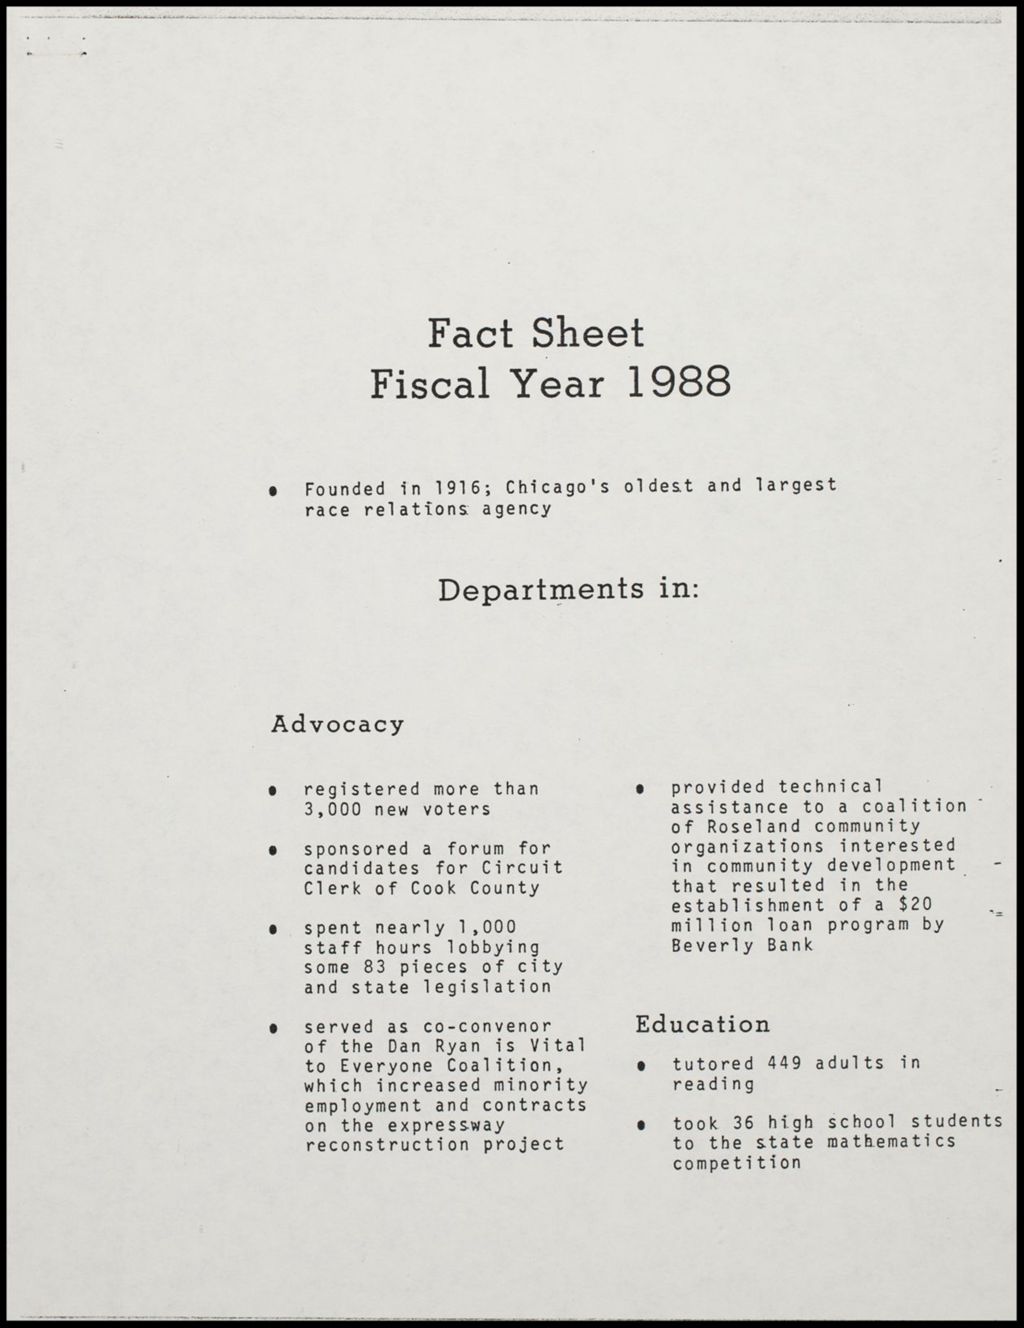 Miniature of CUL Fact Sheet, 1988 (Folder IV-750)